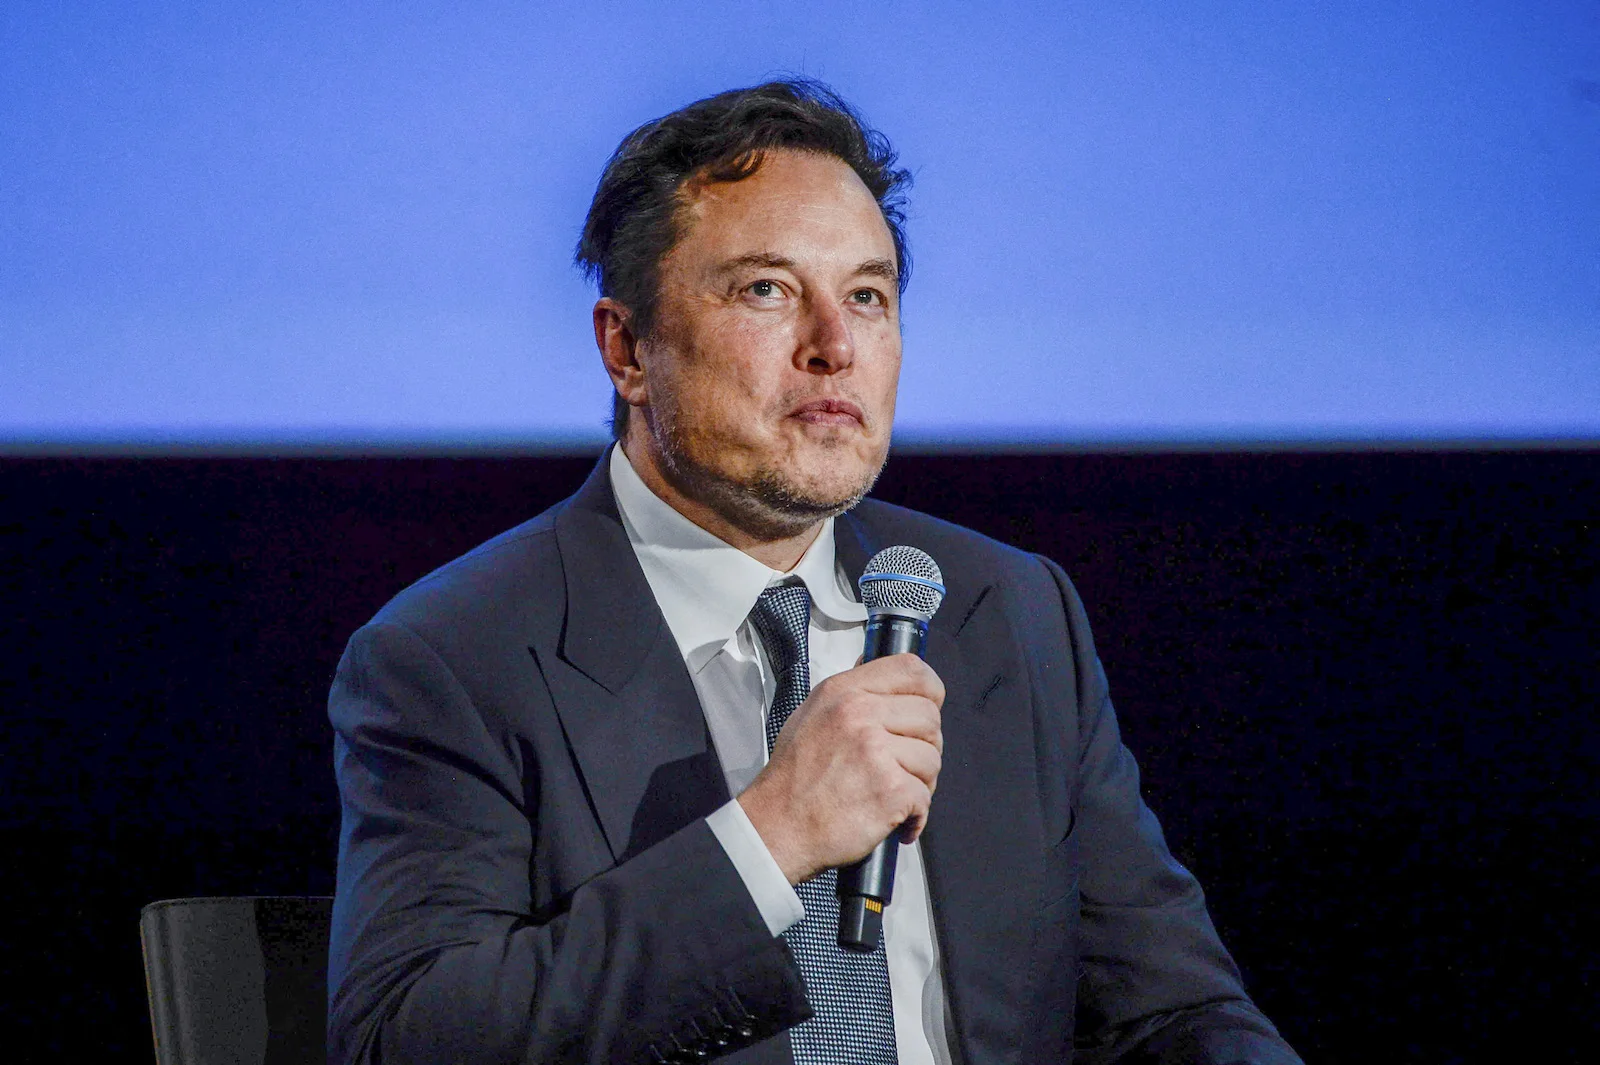 Elon Musk el CEO de Tesla, SpaceX y Twitter - Foto: NA